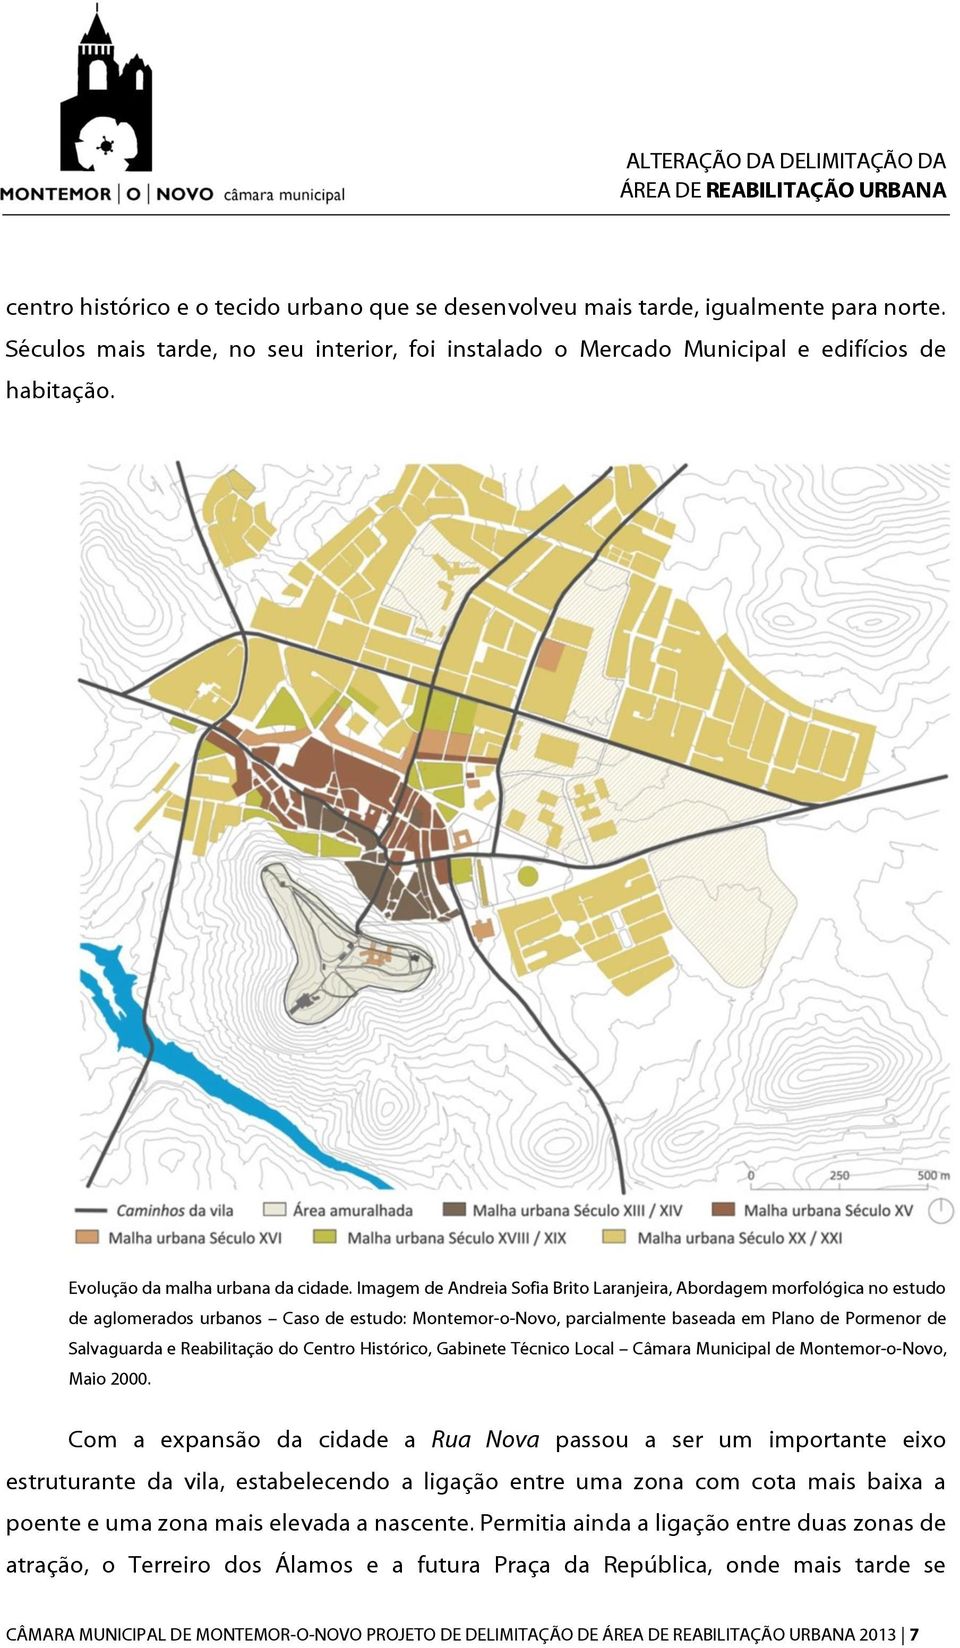 Imagem de Andreia Sofia Brito Laranjeira, Abordagem morfológica no estudo de aglomerados urbanos Caso de estudo: Montemor-o-Novo, parcialmente baseada em Plano de Pormenor de Salvaguarda e